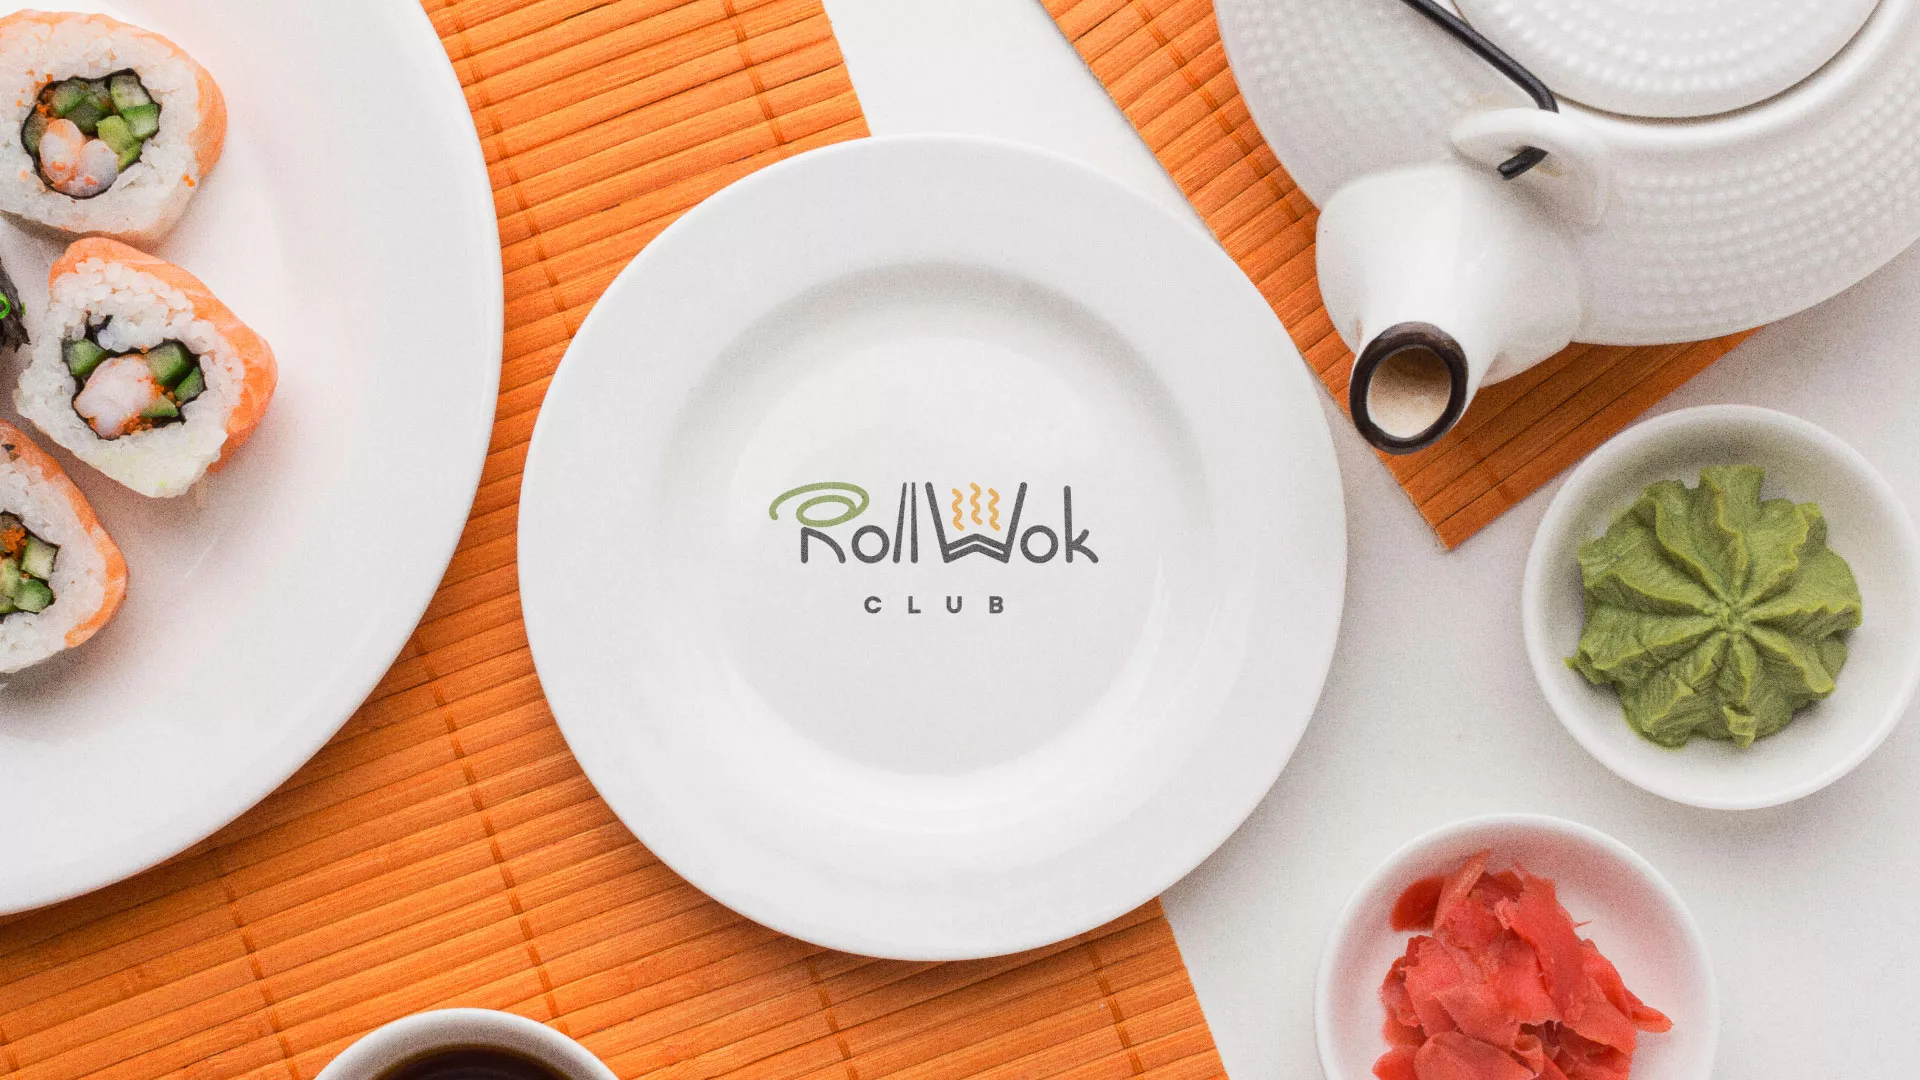 Разработка логотипа и фирменного стиля суши-бара «Roll Wok Club» в Каргополе